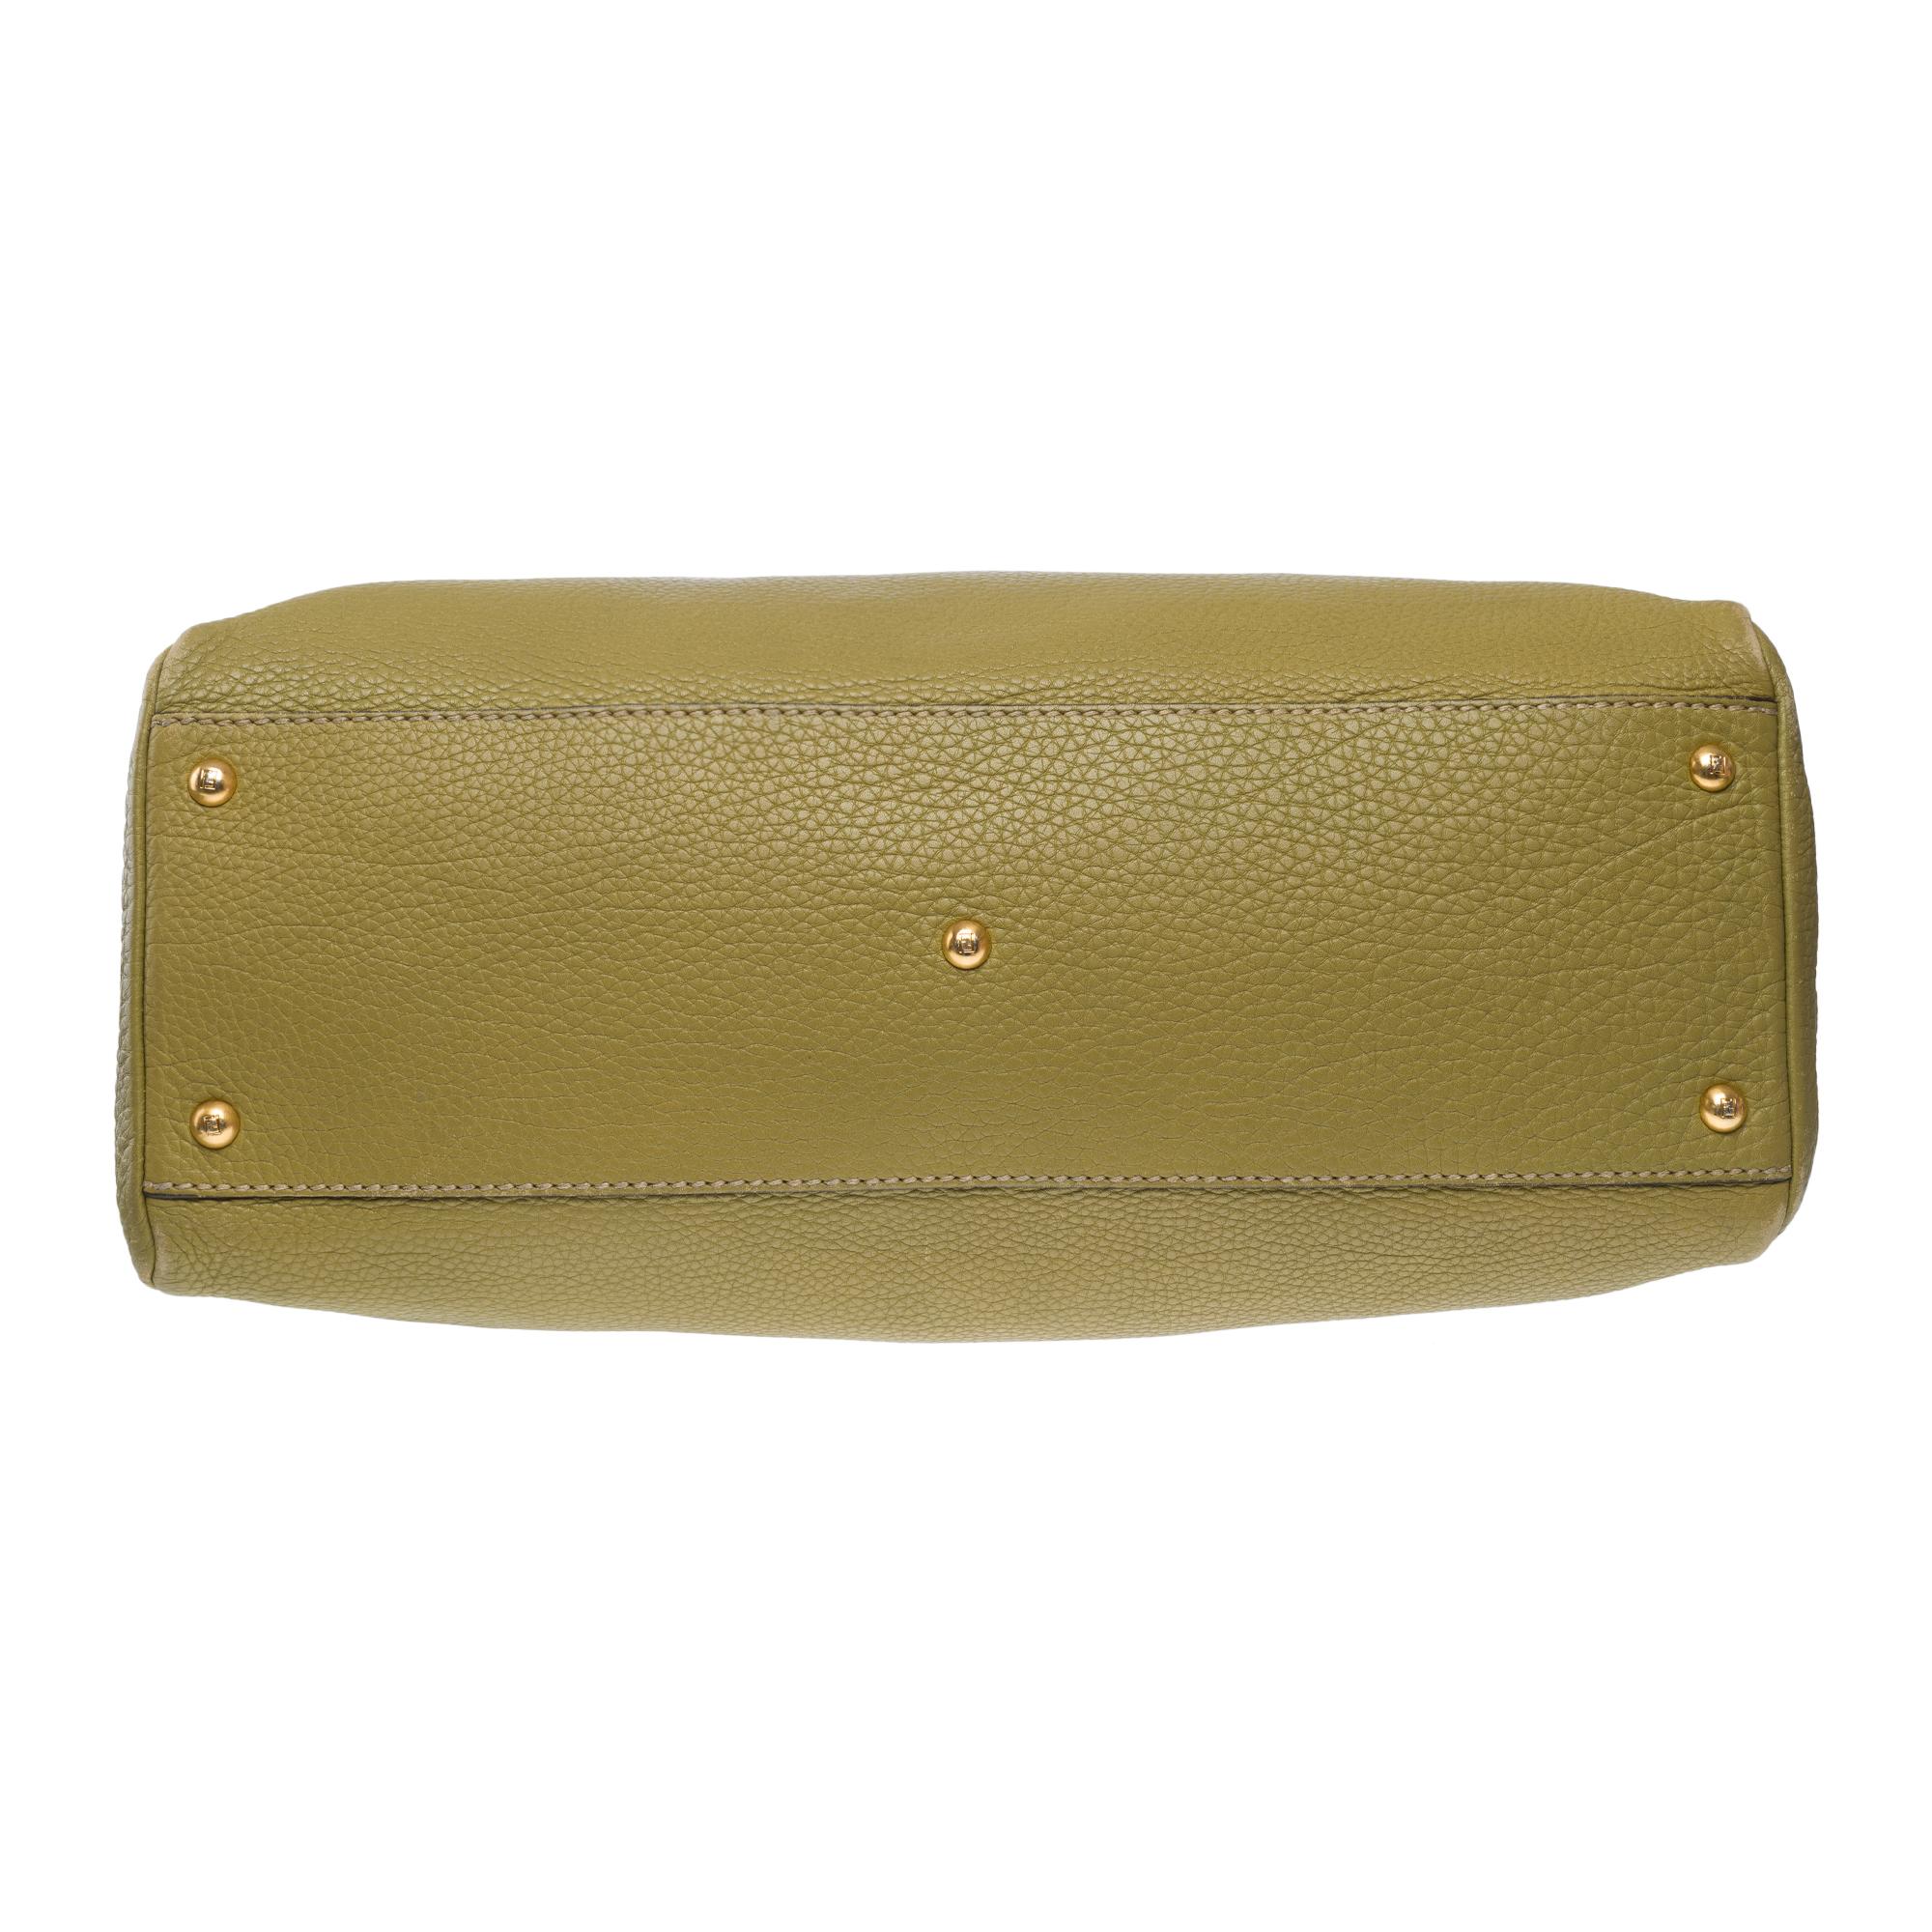 Fendi Grand Modele Peekaboo handbag strap in Olive Green calf leather, GHW For Sale 7